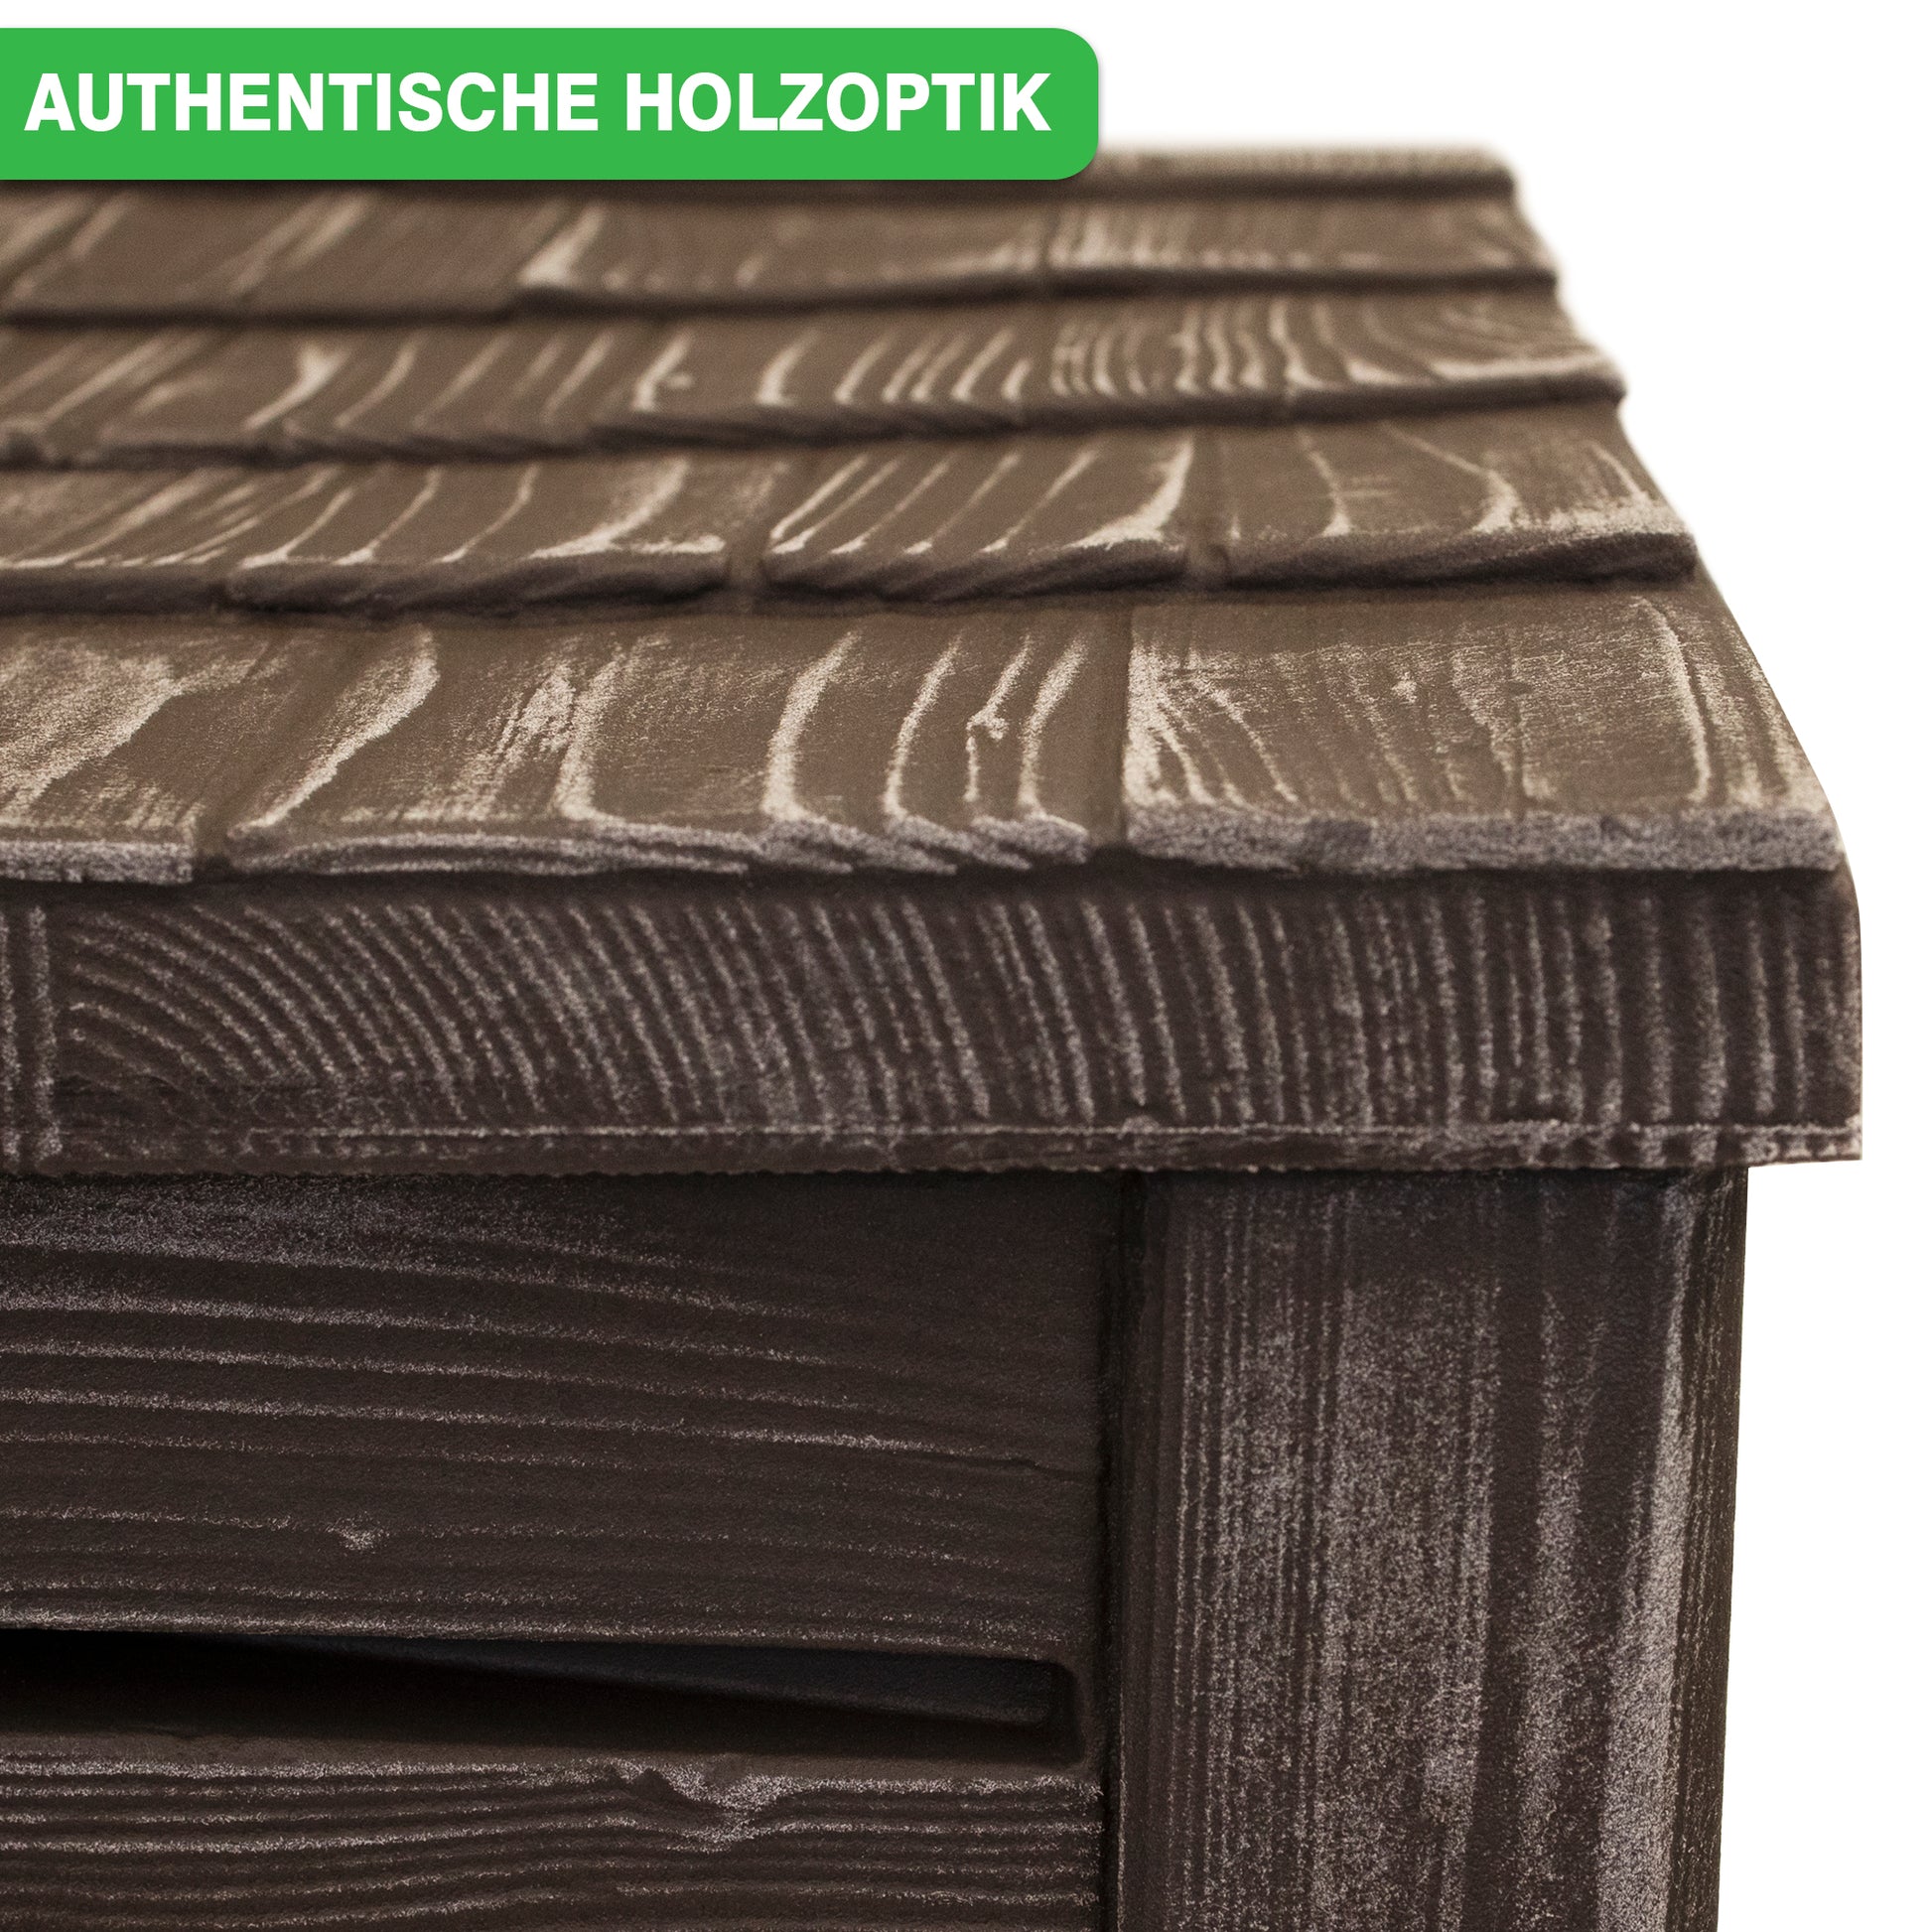 Holzstrukturierte Oberfläche mit dem Etikett YourCasa Regentonne 230 Liter [Slimline Nordic] - Holzoptik mit Metallgewinde für authentische Holzoptik.